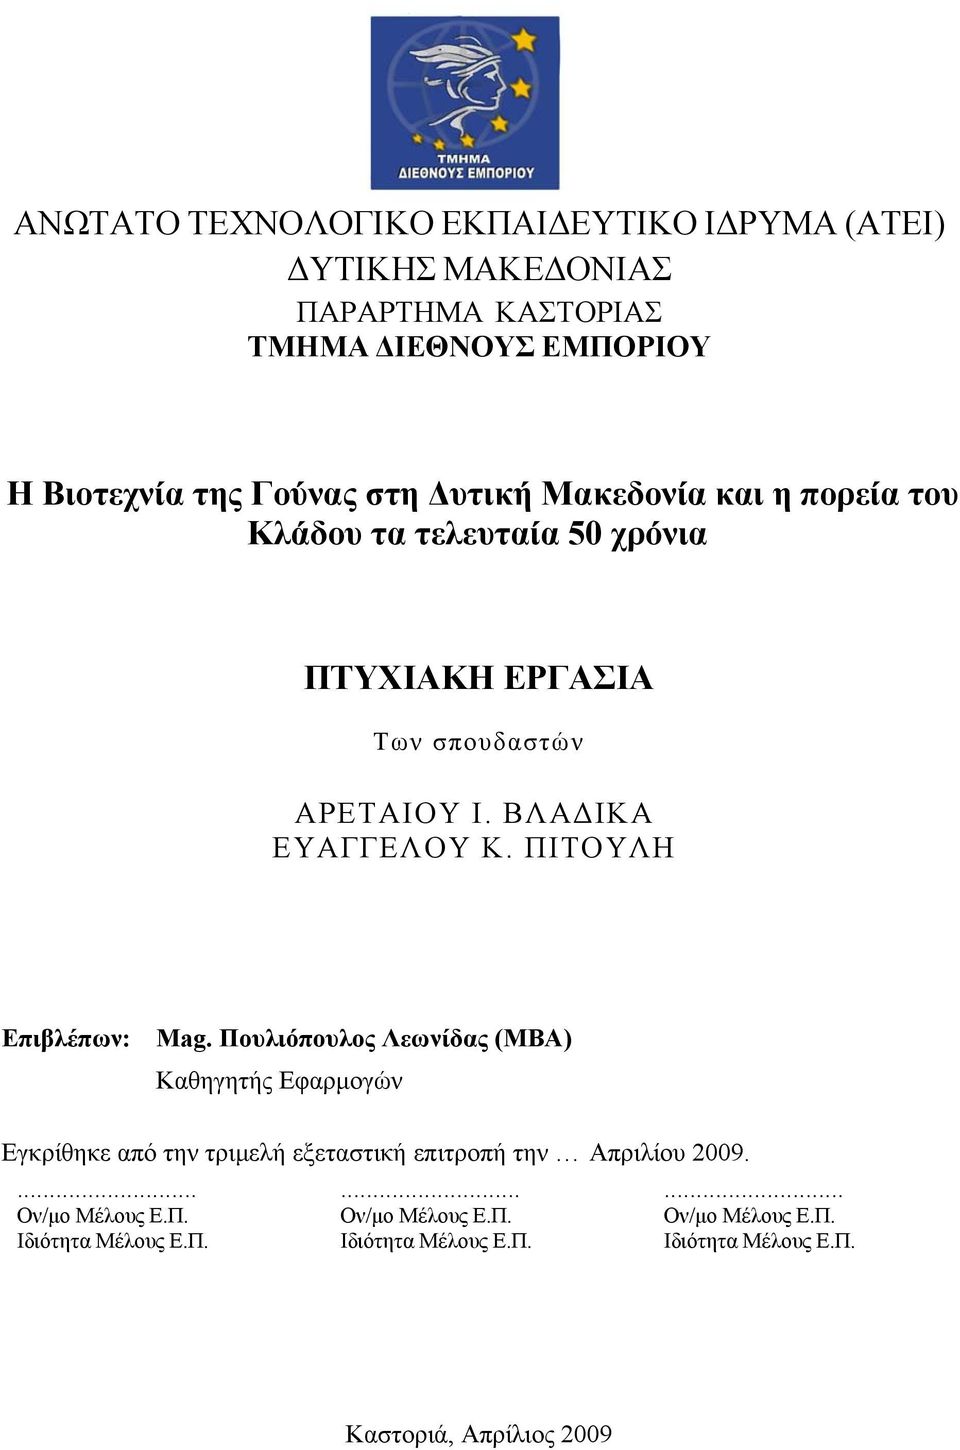 ΠΙΤΟΥΛΗ Επιβλέπων: Mag. Πουλιόπουλος Λεωνίδας (MBA) Καθηγητής Εφαρμογών Εγκρίθηκε από την τριμελή εξεταστική επιτροπή την Απριλίου 2009.